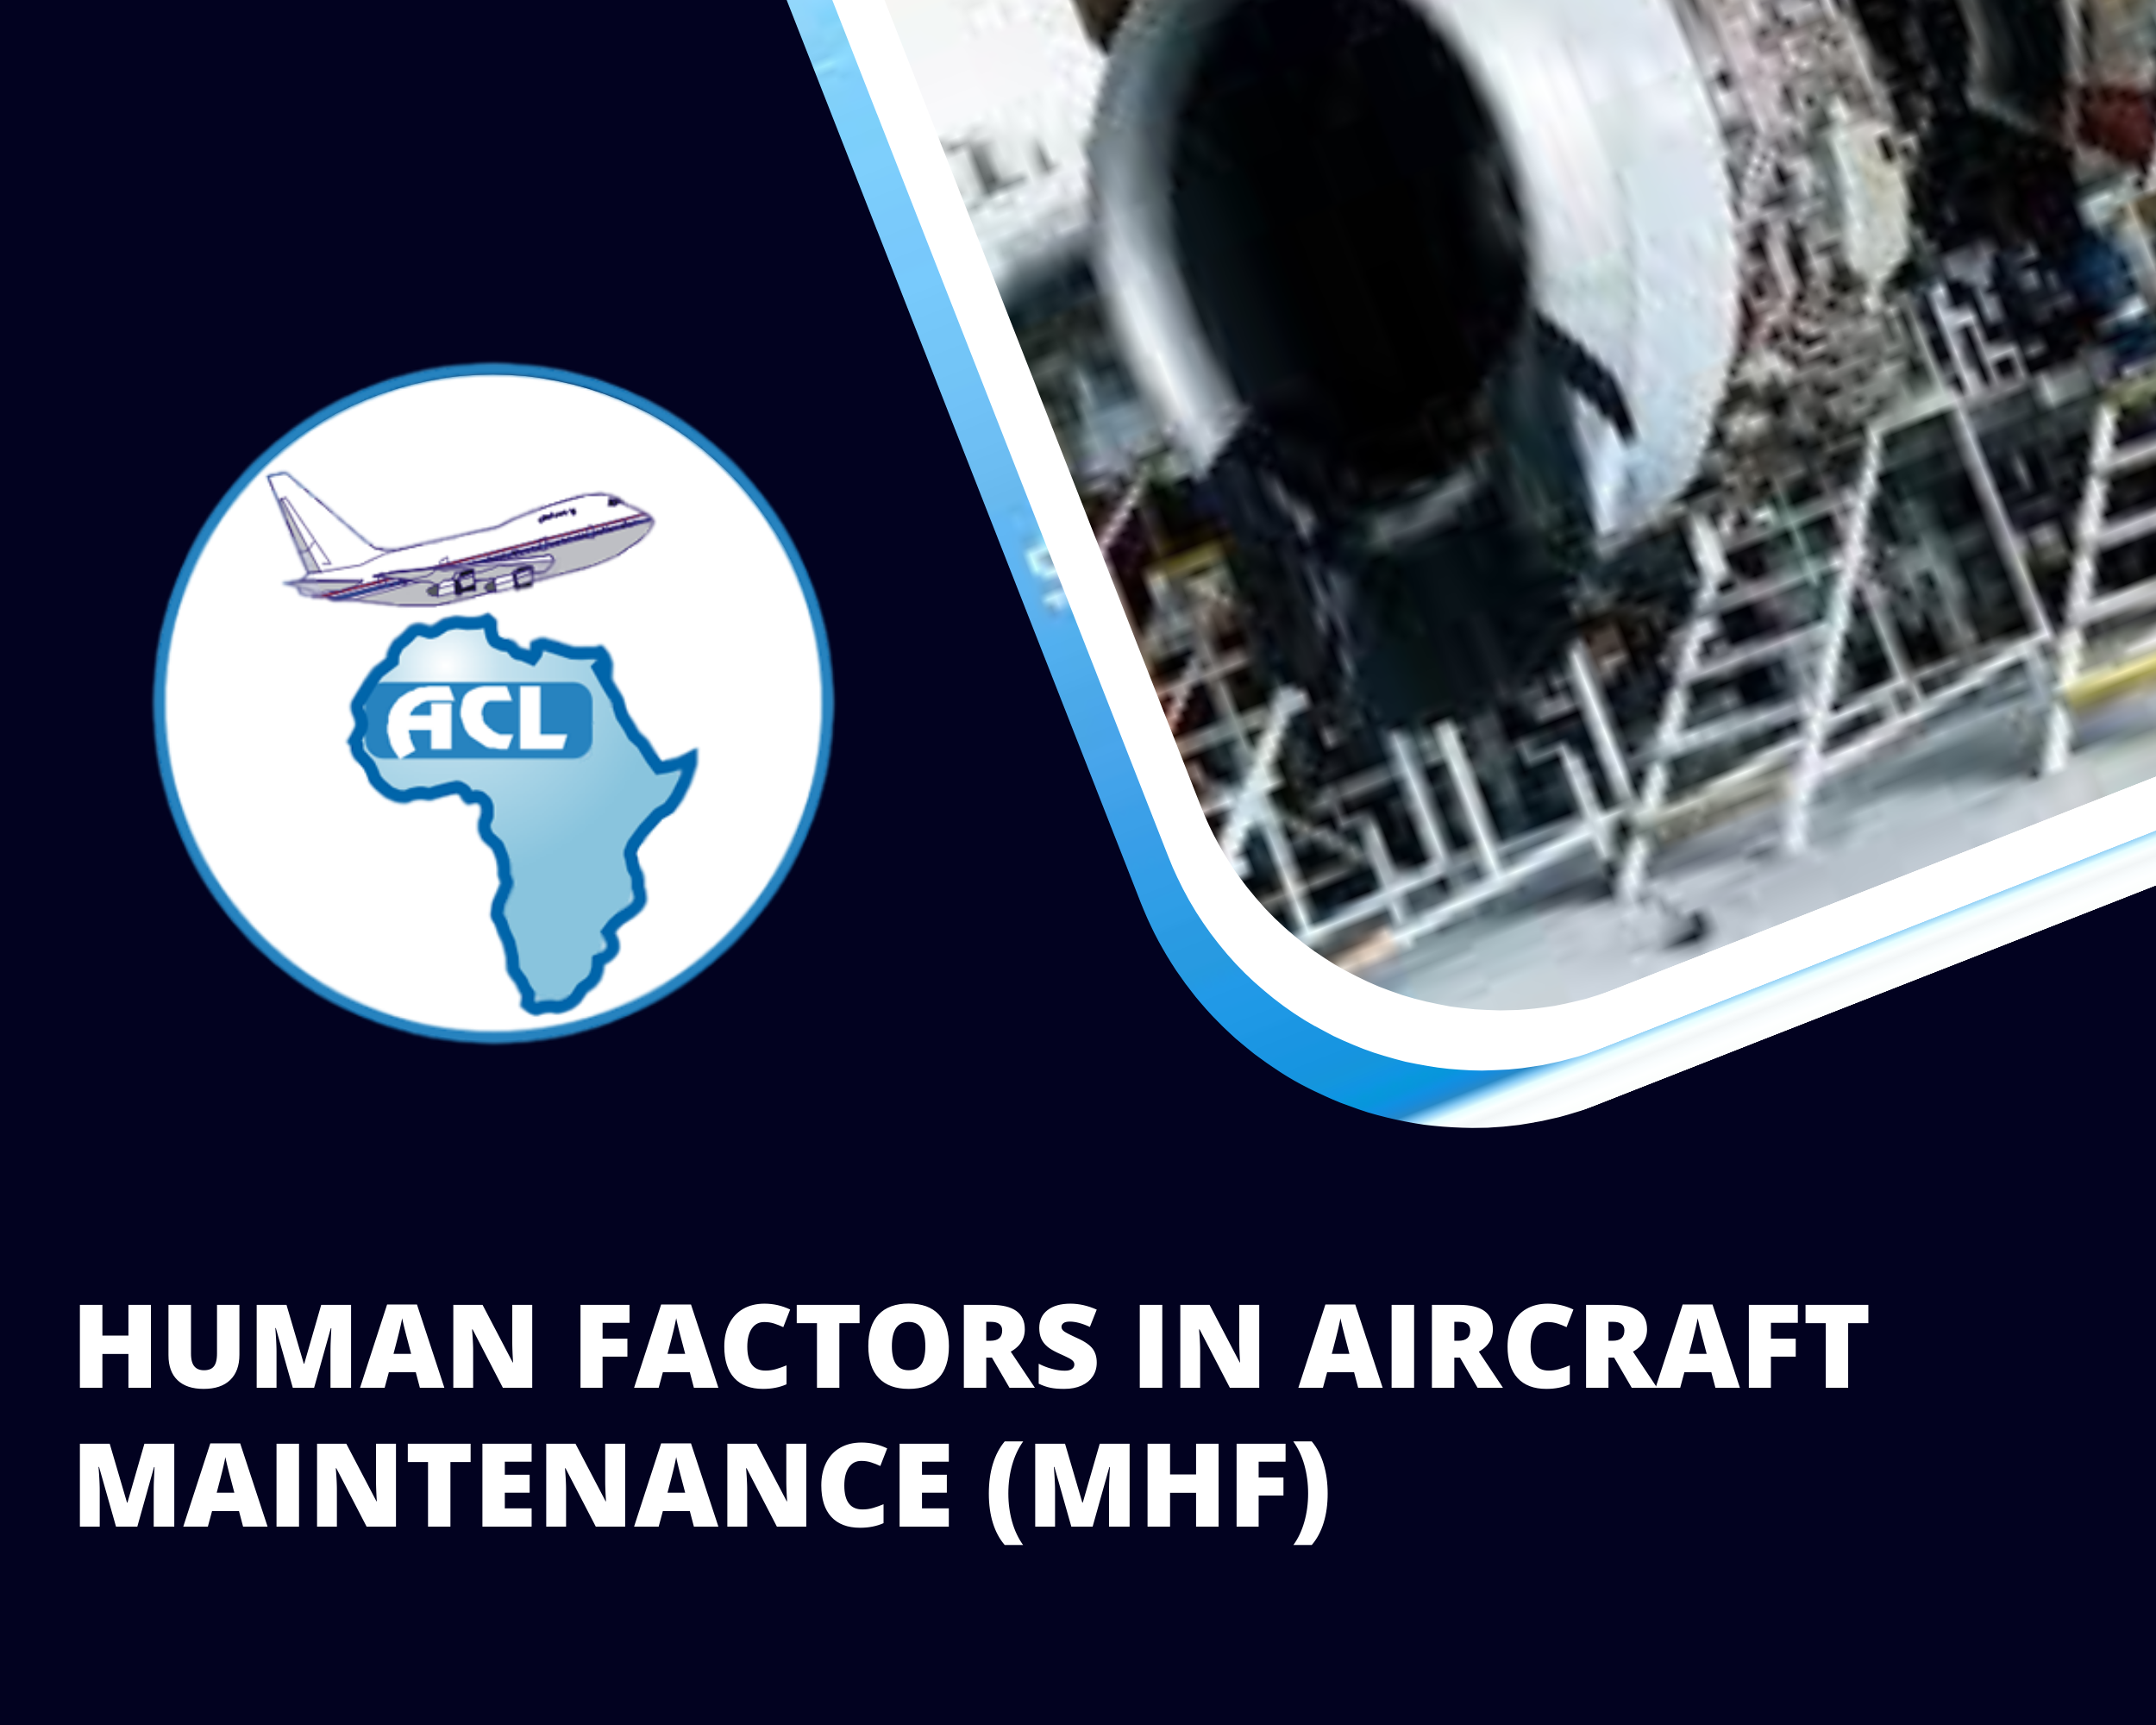 HUMAN FACTORS IN AIRCRAFT MAINTENANCE (MHF)